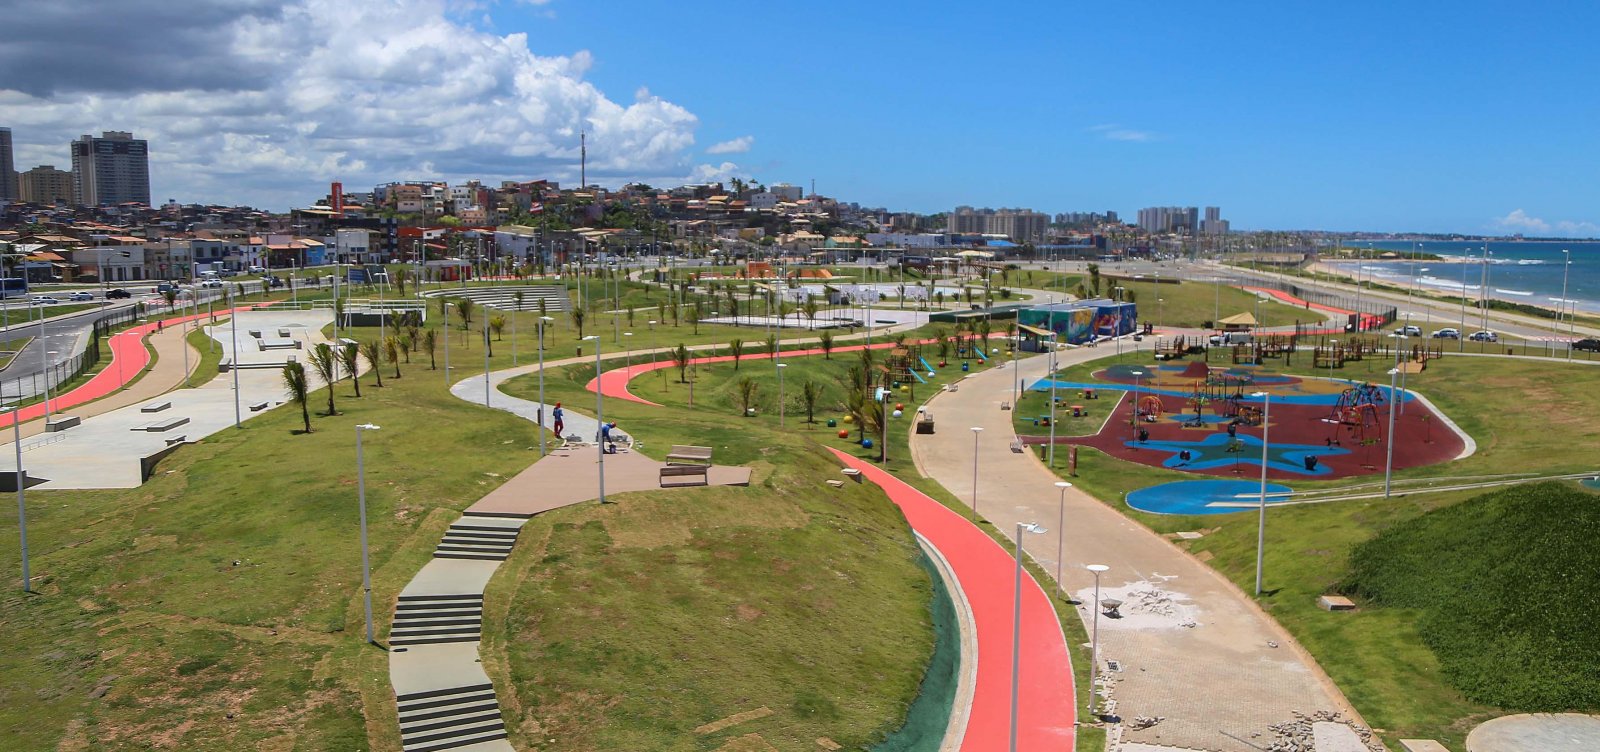 Parques e praças municipais vão reabrir em Salvador - ANF - Agência de  Notícias das Favelas |